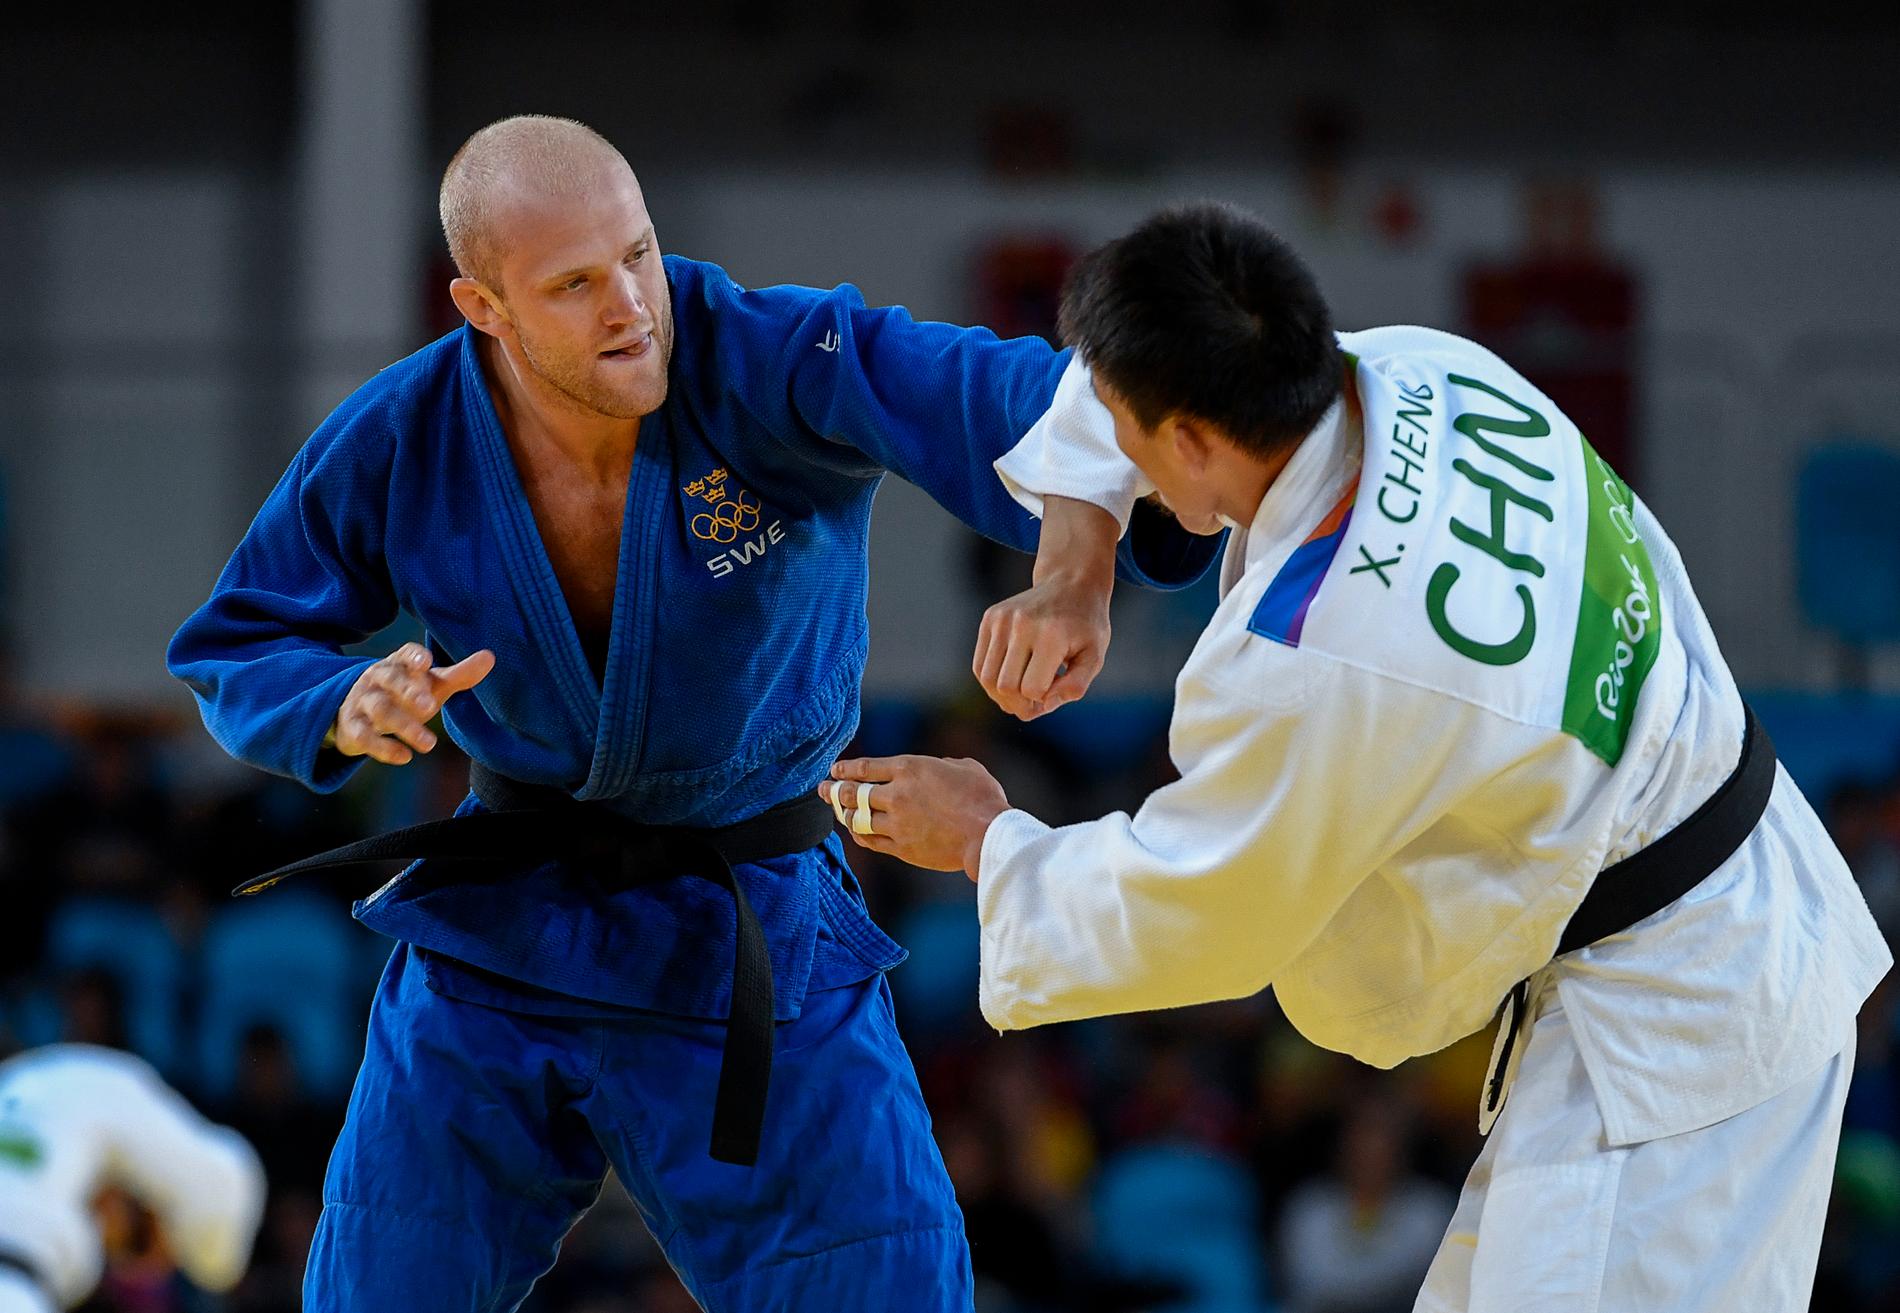 Marcus Nyman var nära medalj i judo i Rio de Janeiro. Nu får han en ny chans i Tokyo. Arkivbild.